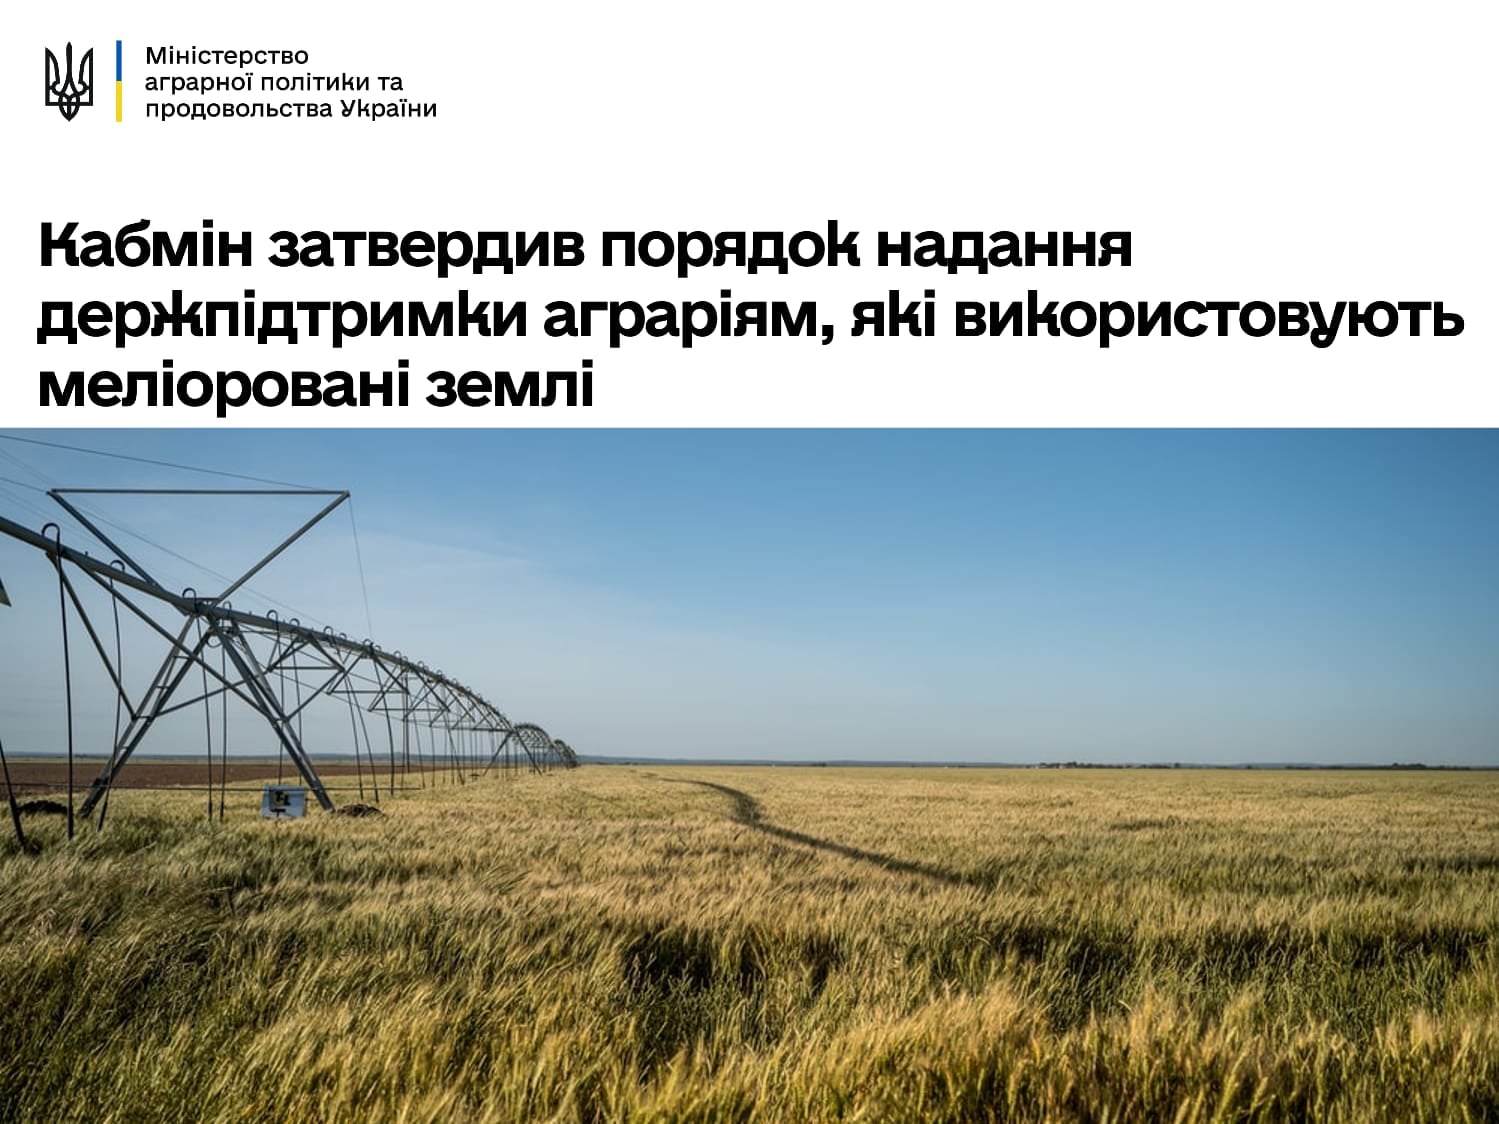 Аграрії, які використовують меліоровані землі, отримають держпідтримку, – Роман Лещенко